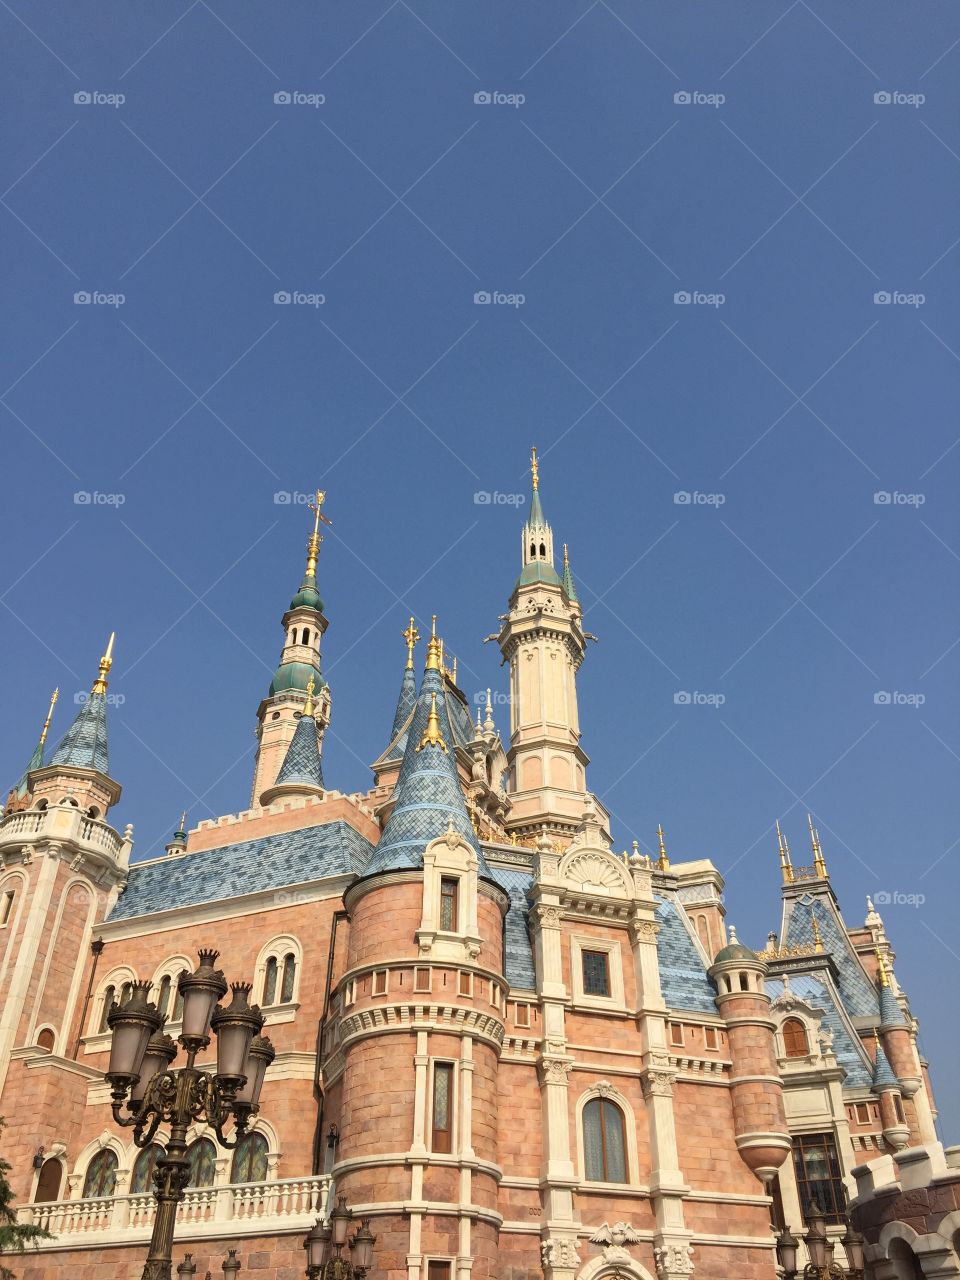 Disneyland Shanghai, China 